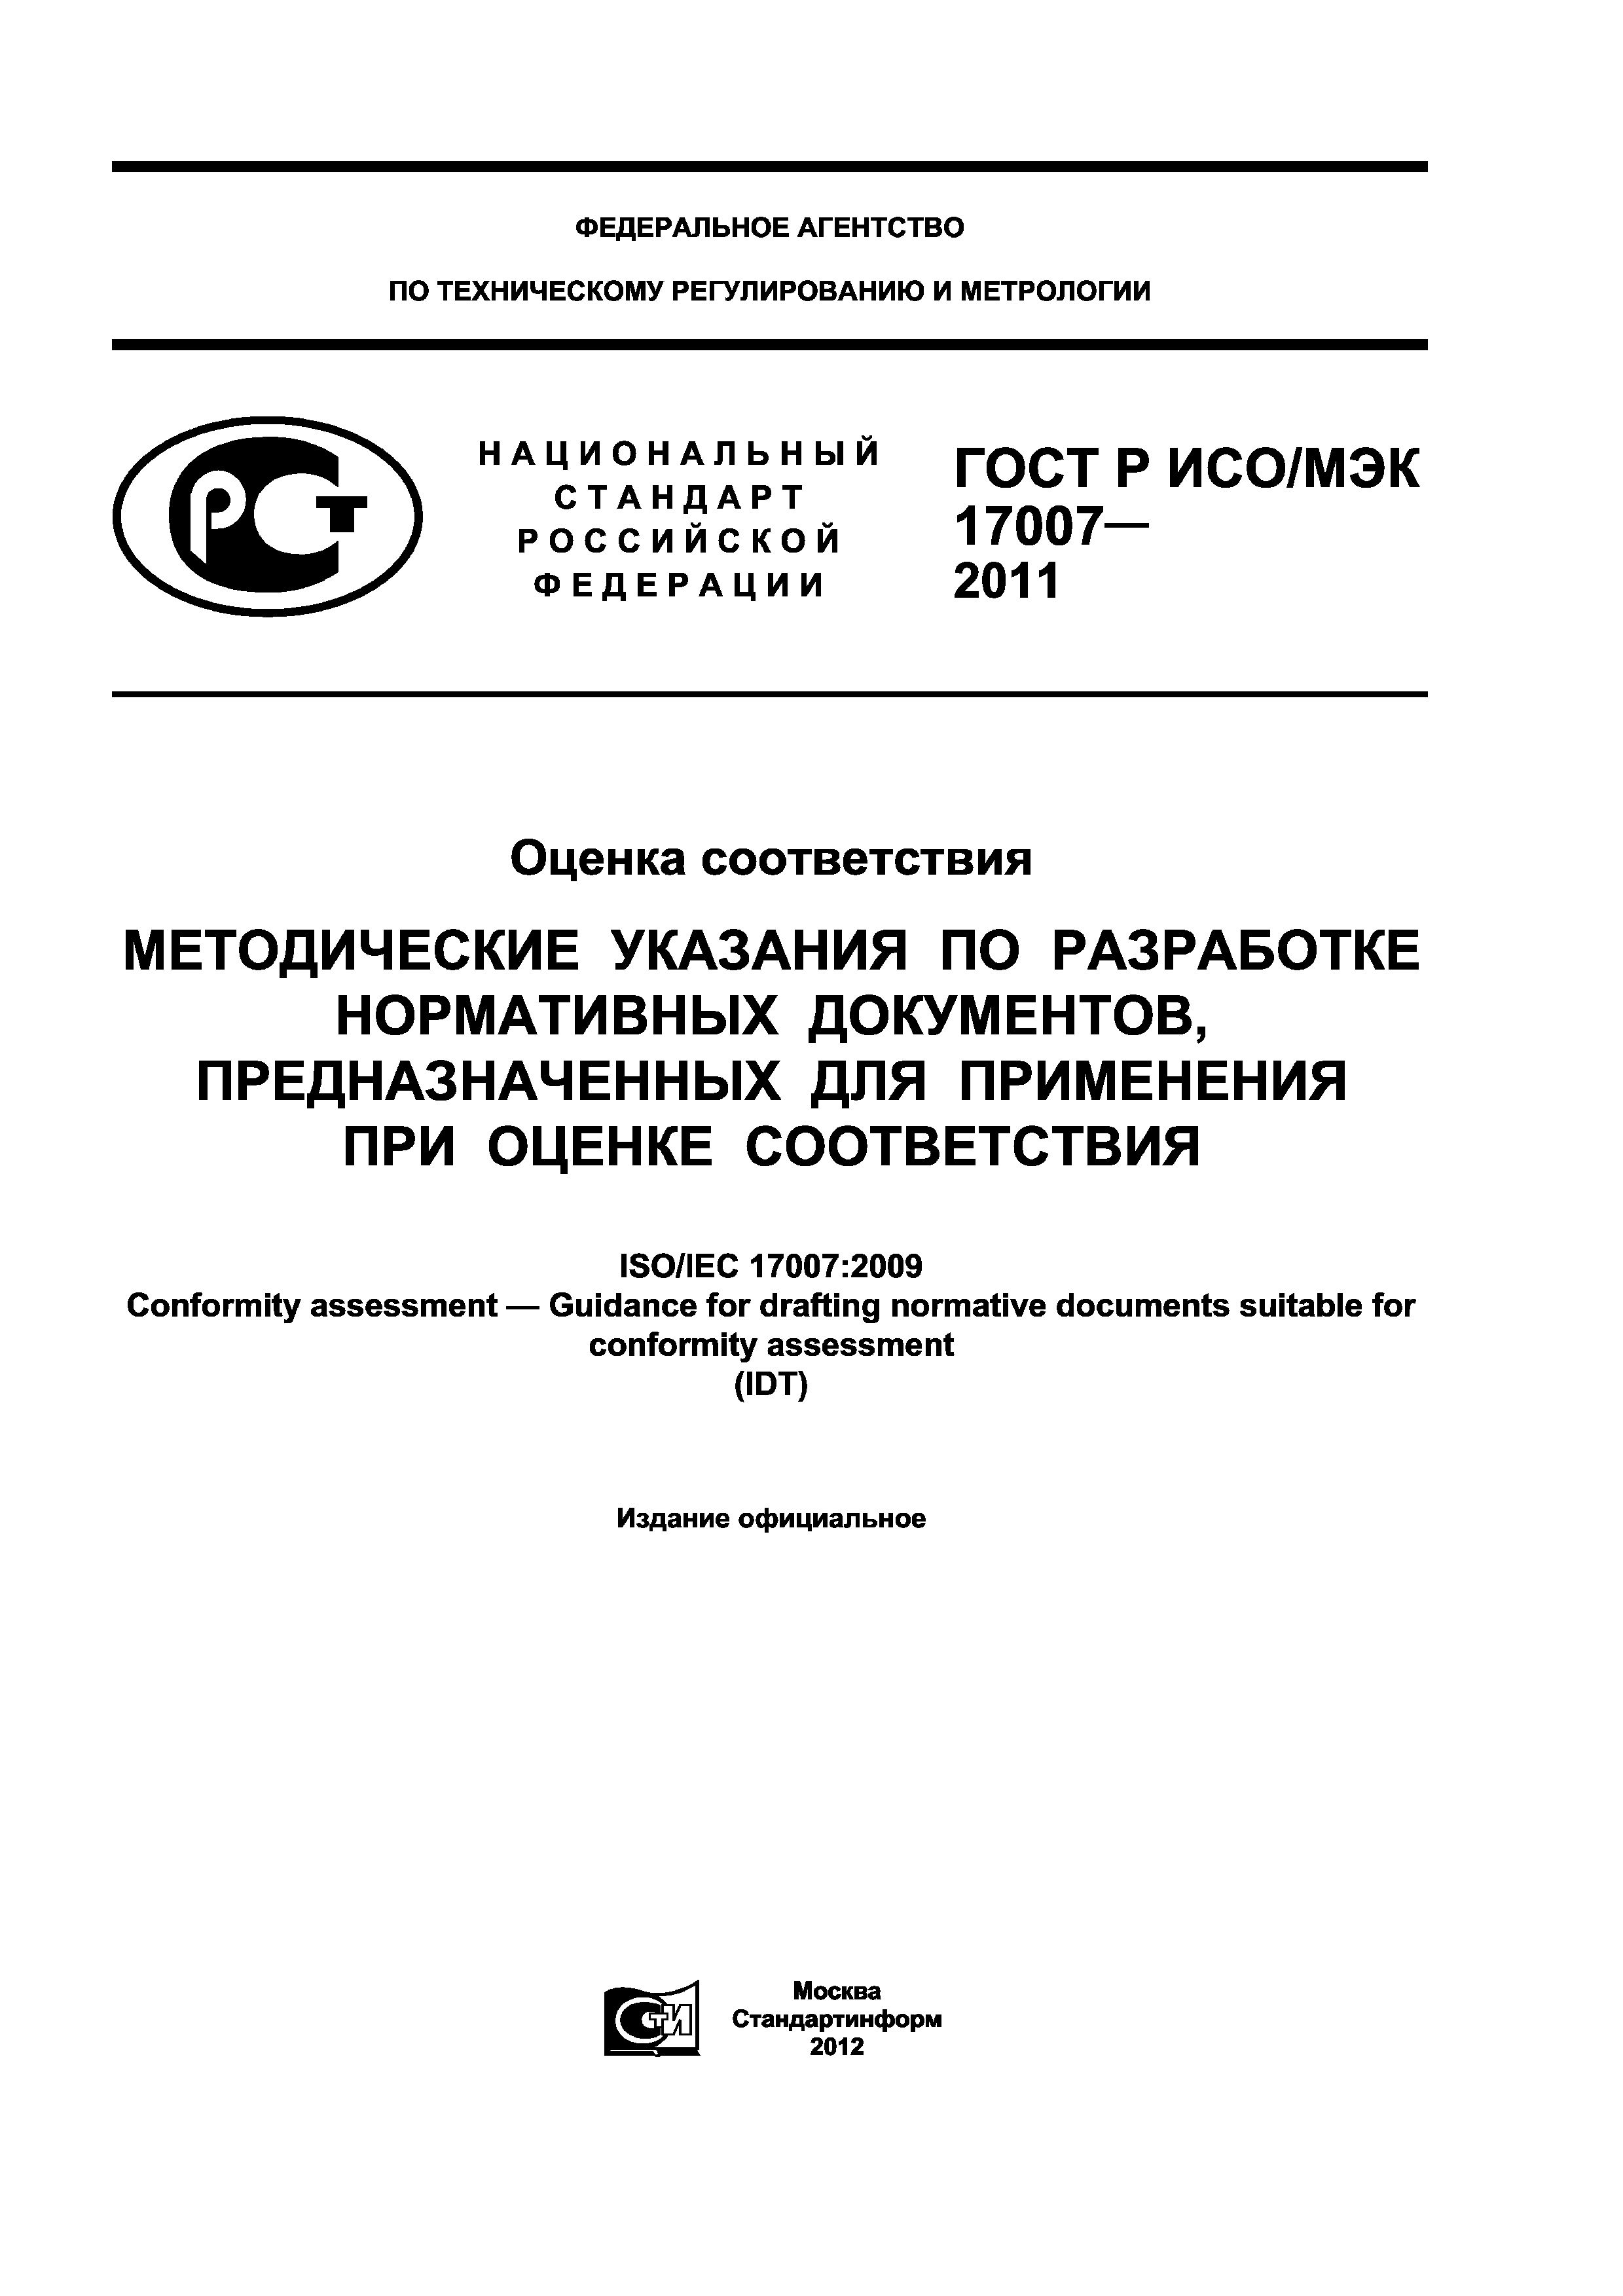 ГОСТ Р ИСО/МЭК 17007-2011